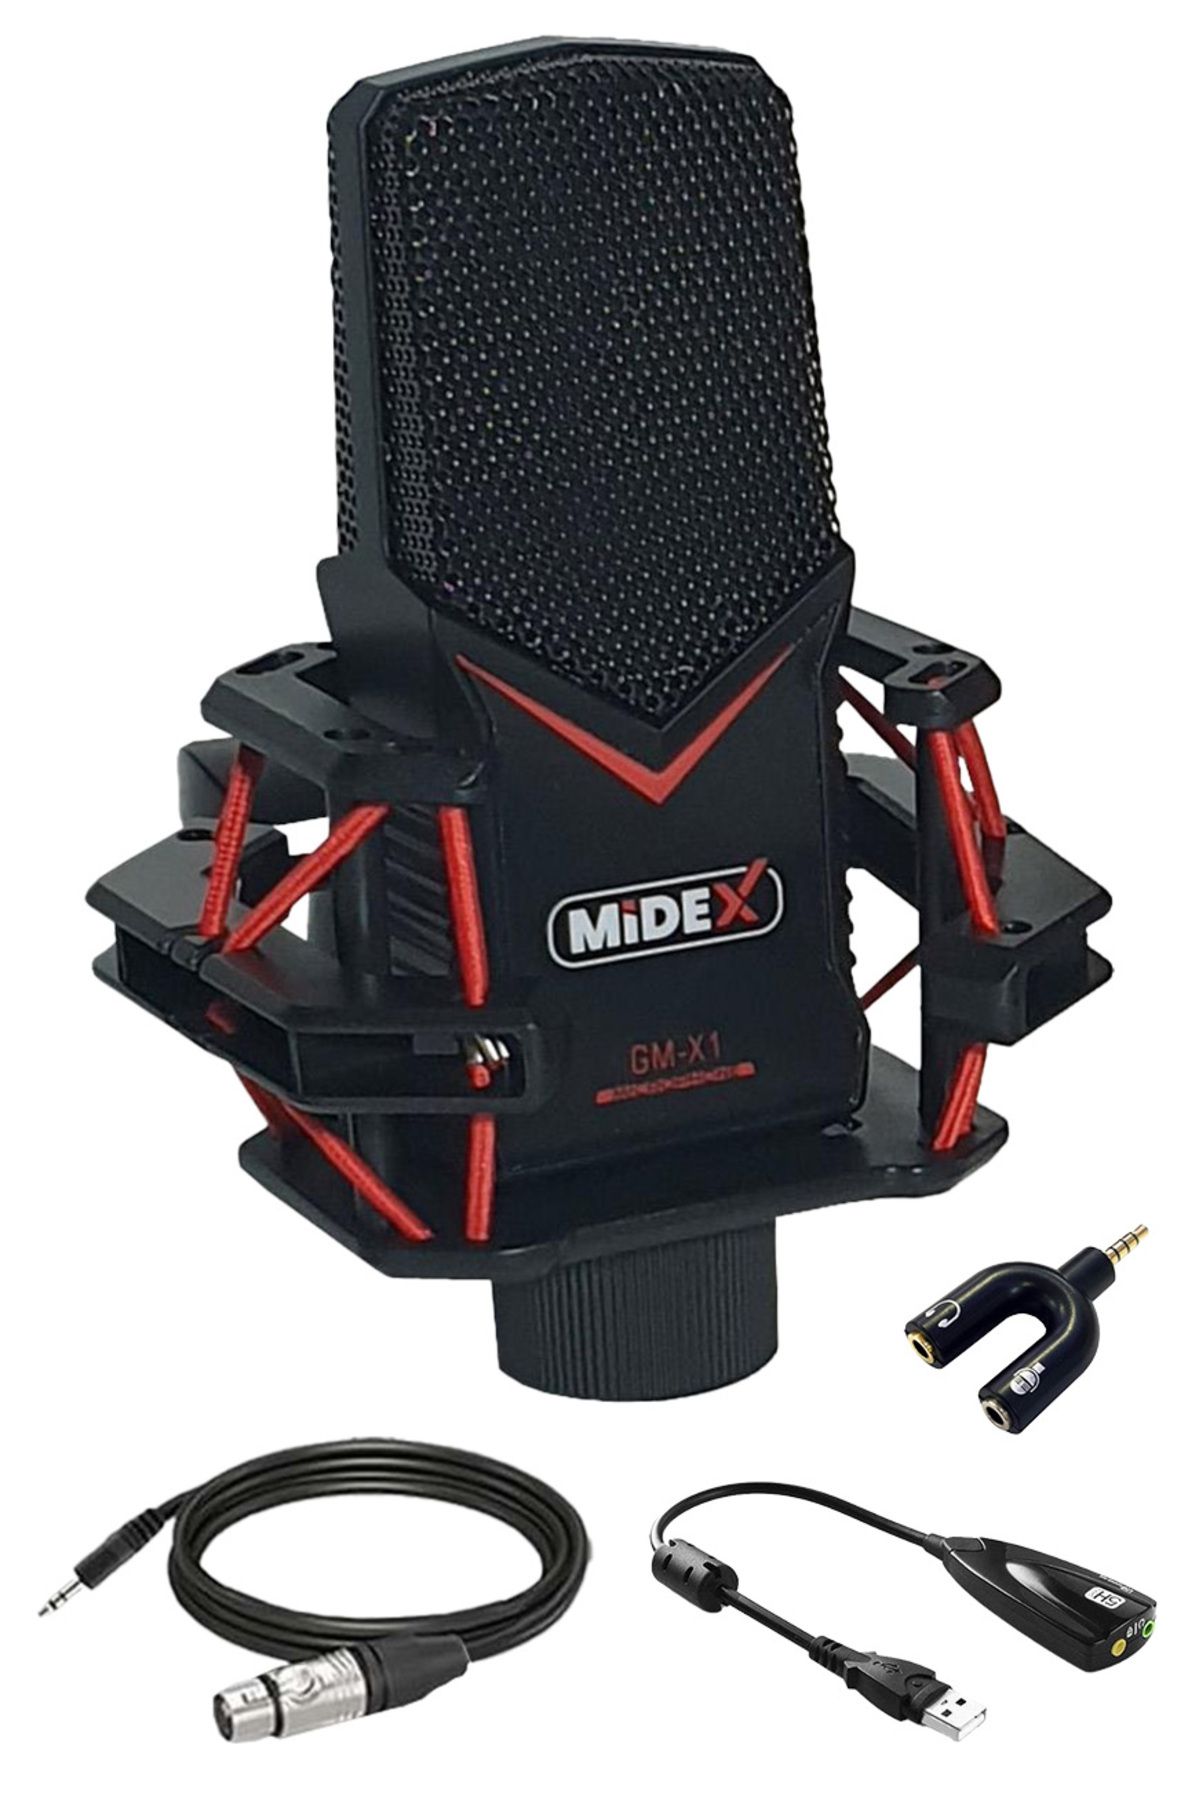 Midex Gaming Gmx1 Oyuncu Mikrofonu Tak Çalıştır Oyun Mikrofonu (BİLGİSAYAR VE TELEFON)